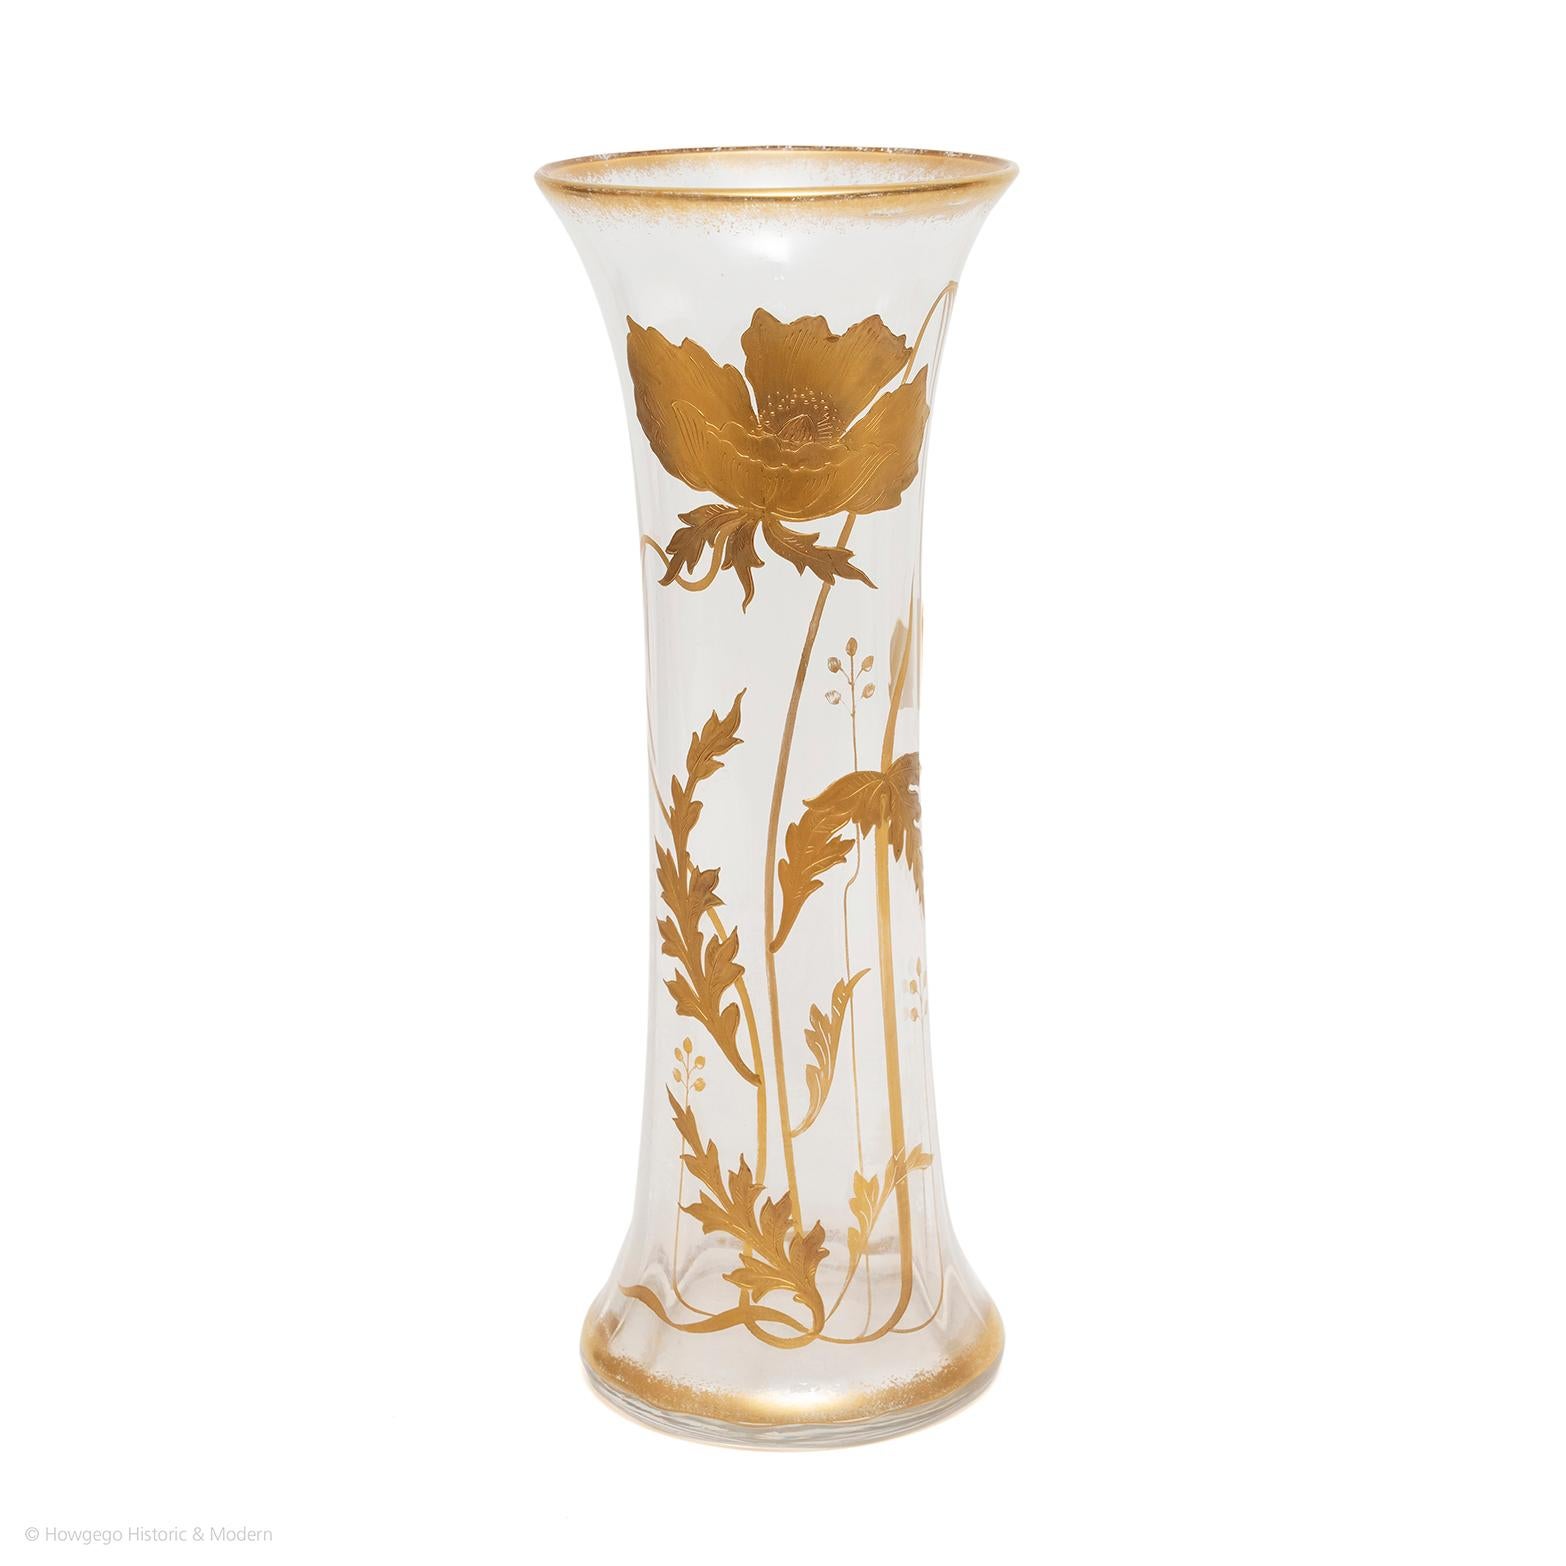 Grand vase en verre côtelé en cristal St Louis, décoré d'une fleur de Convolvulus émaillée à l'or fin. Le sommet est orné de fines plumes dorées. La base du vase est ornée d'un anneau doré et un grand convolvulus stylisé et doré en profond relief